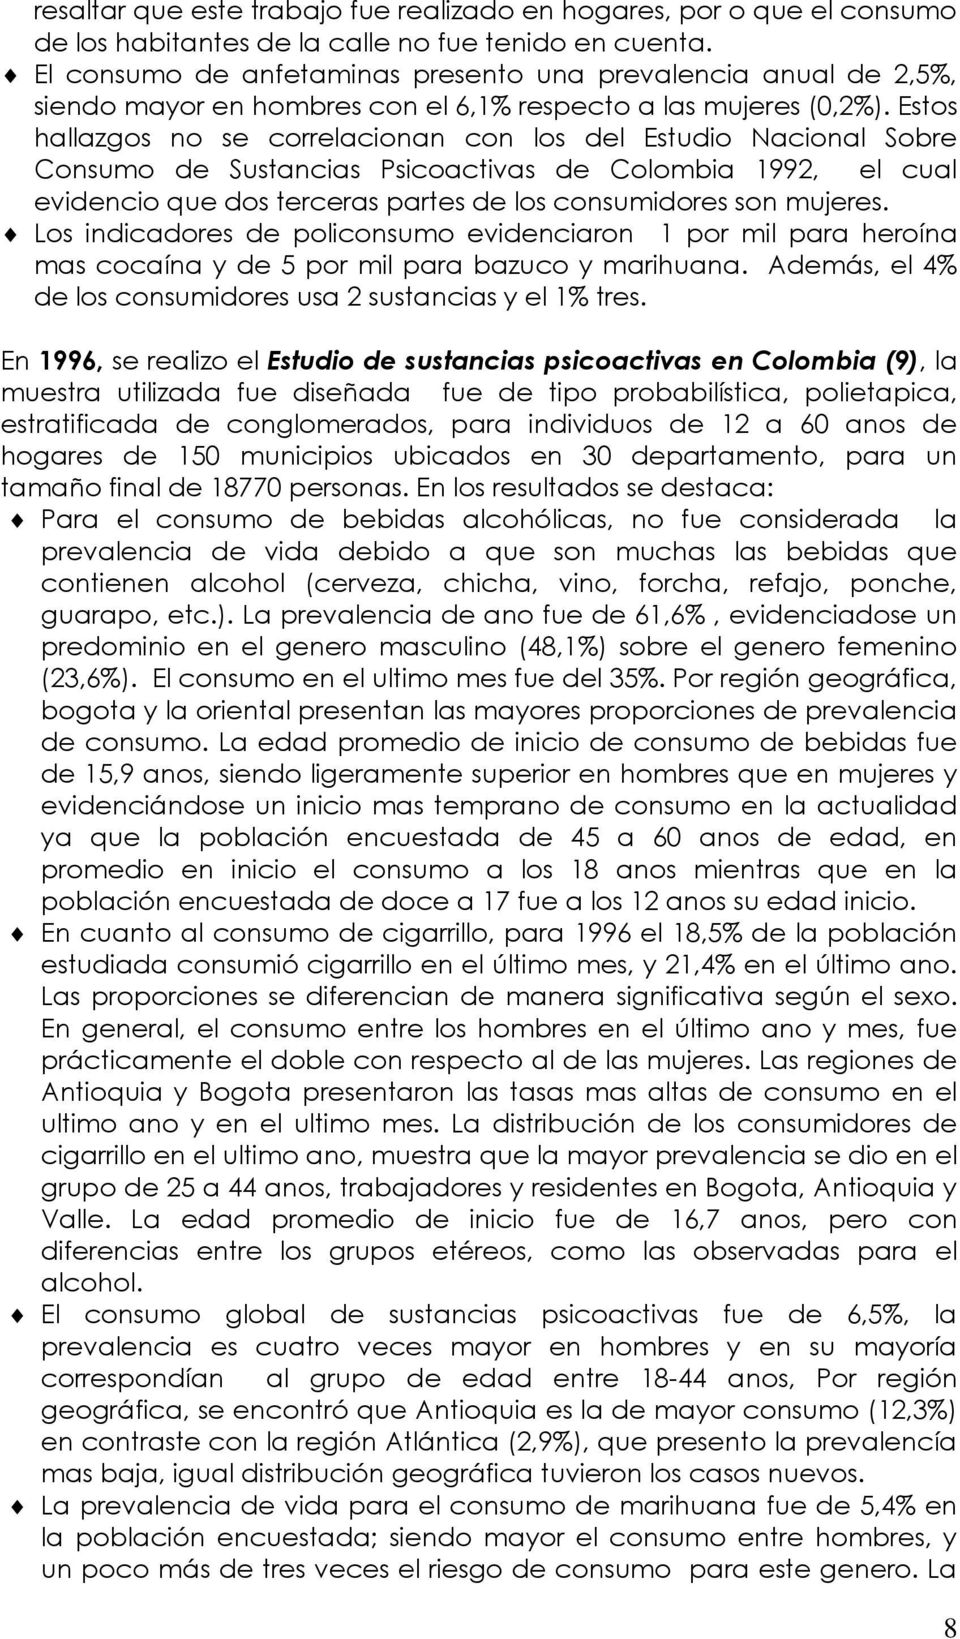 Estos hallazgos no se correlacionan con los del Estudio Nacional Sobre Consumo de Sustancias Psicoactivas de Colombia 1992, el cual evidencio que dos terceras partes de los consumidores son mujeres.